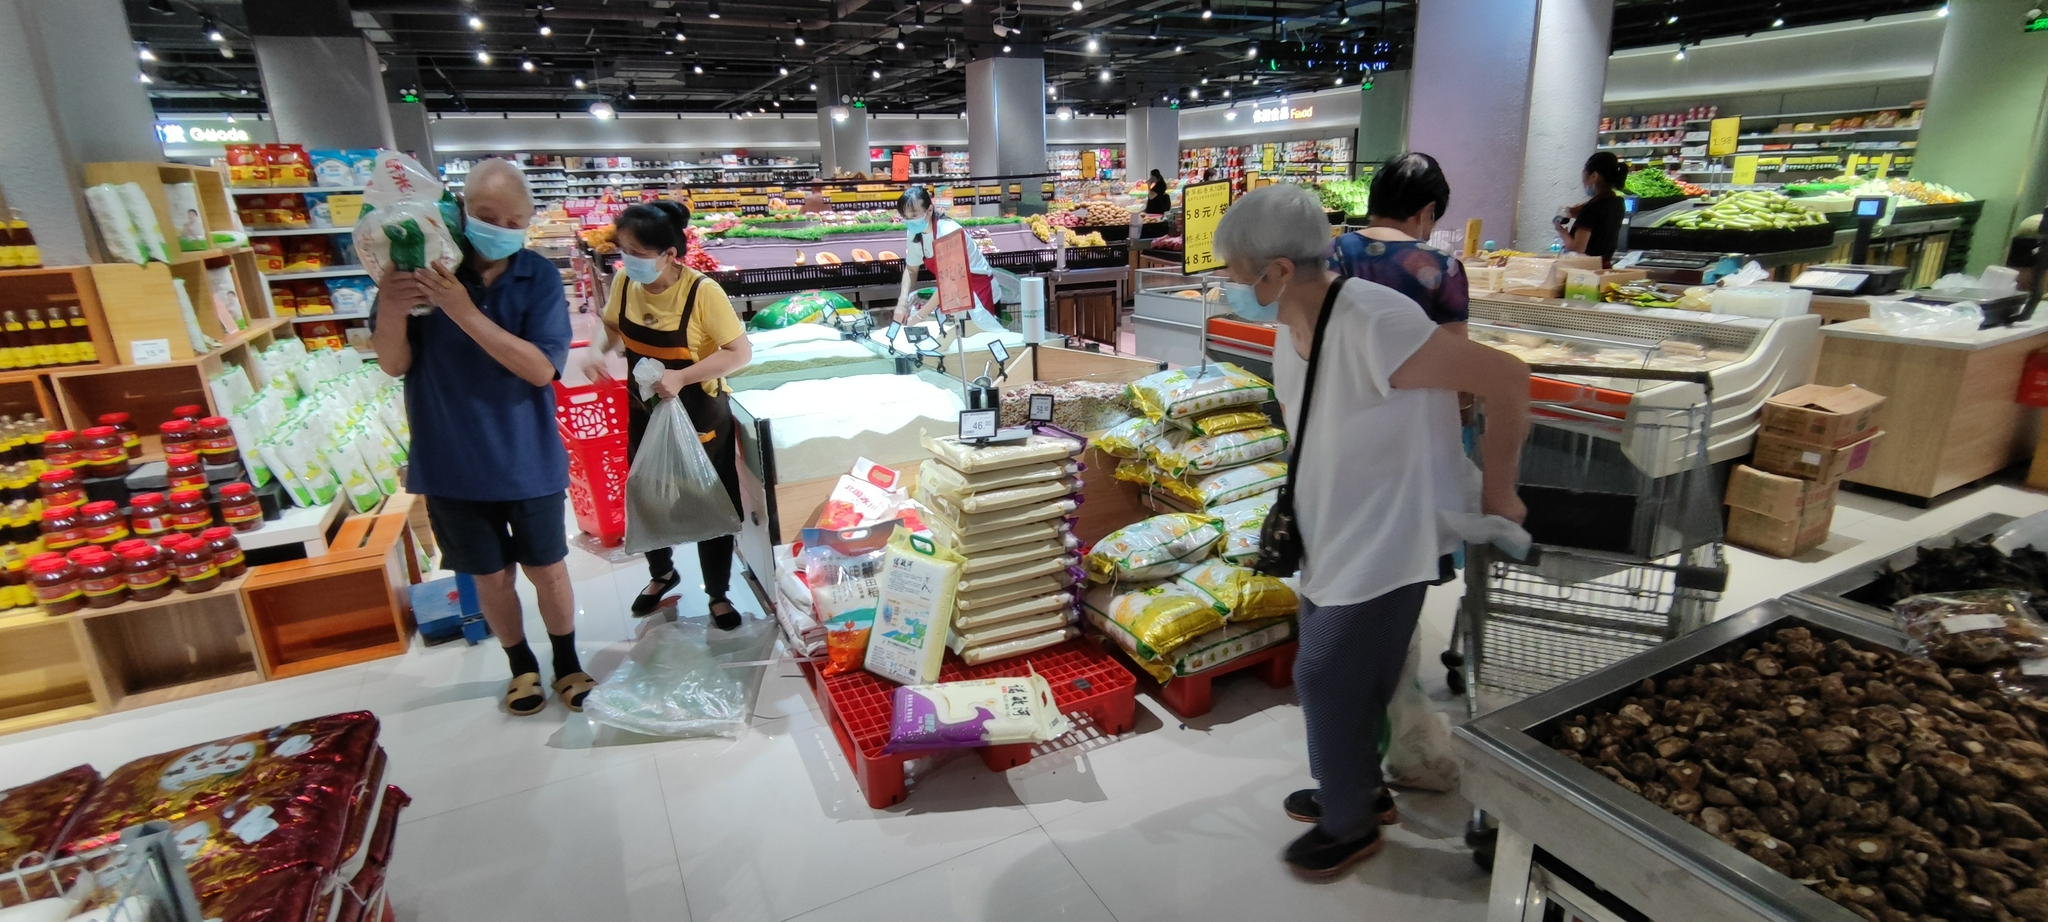 （正在武汉超市采购物资的市民，记者刘茜、实习生井然摄）